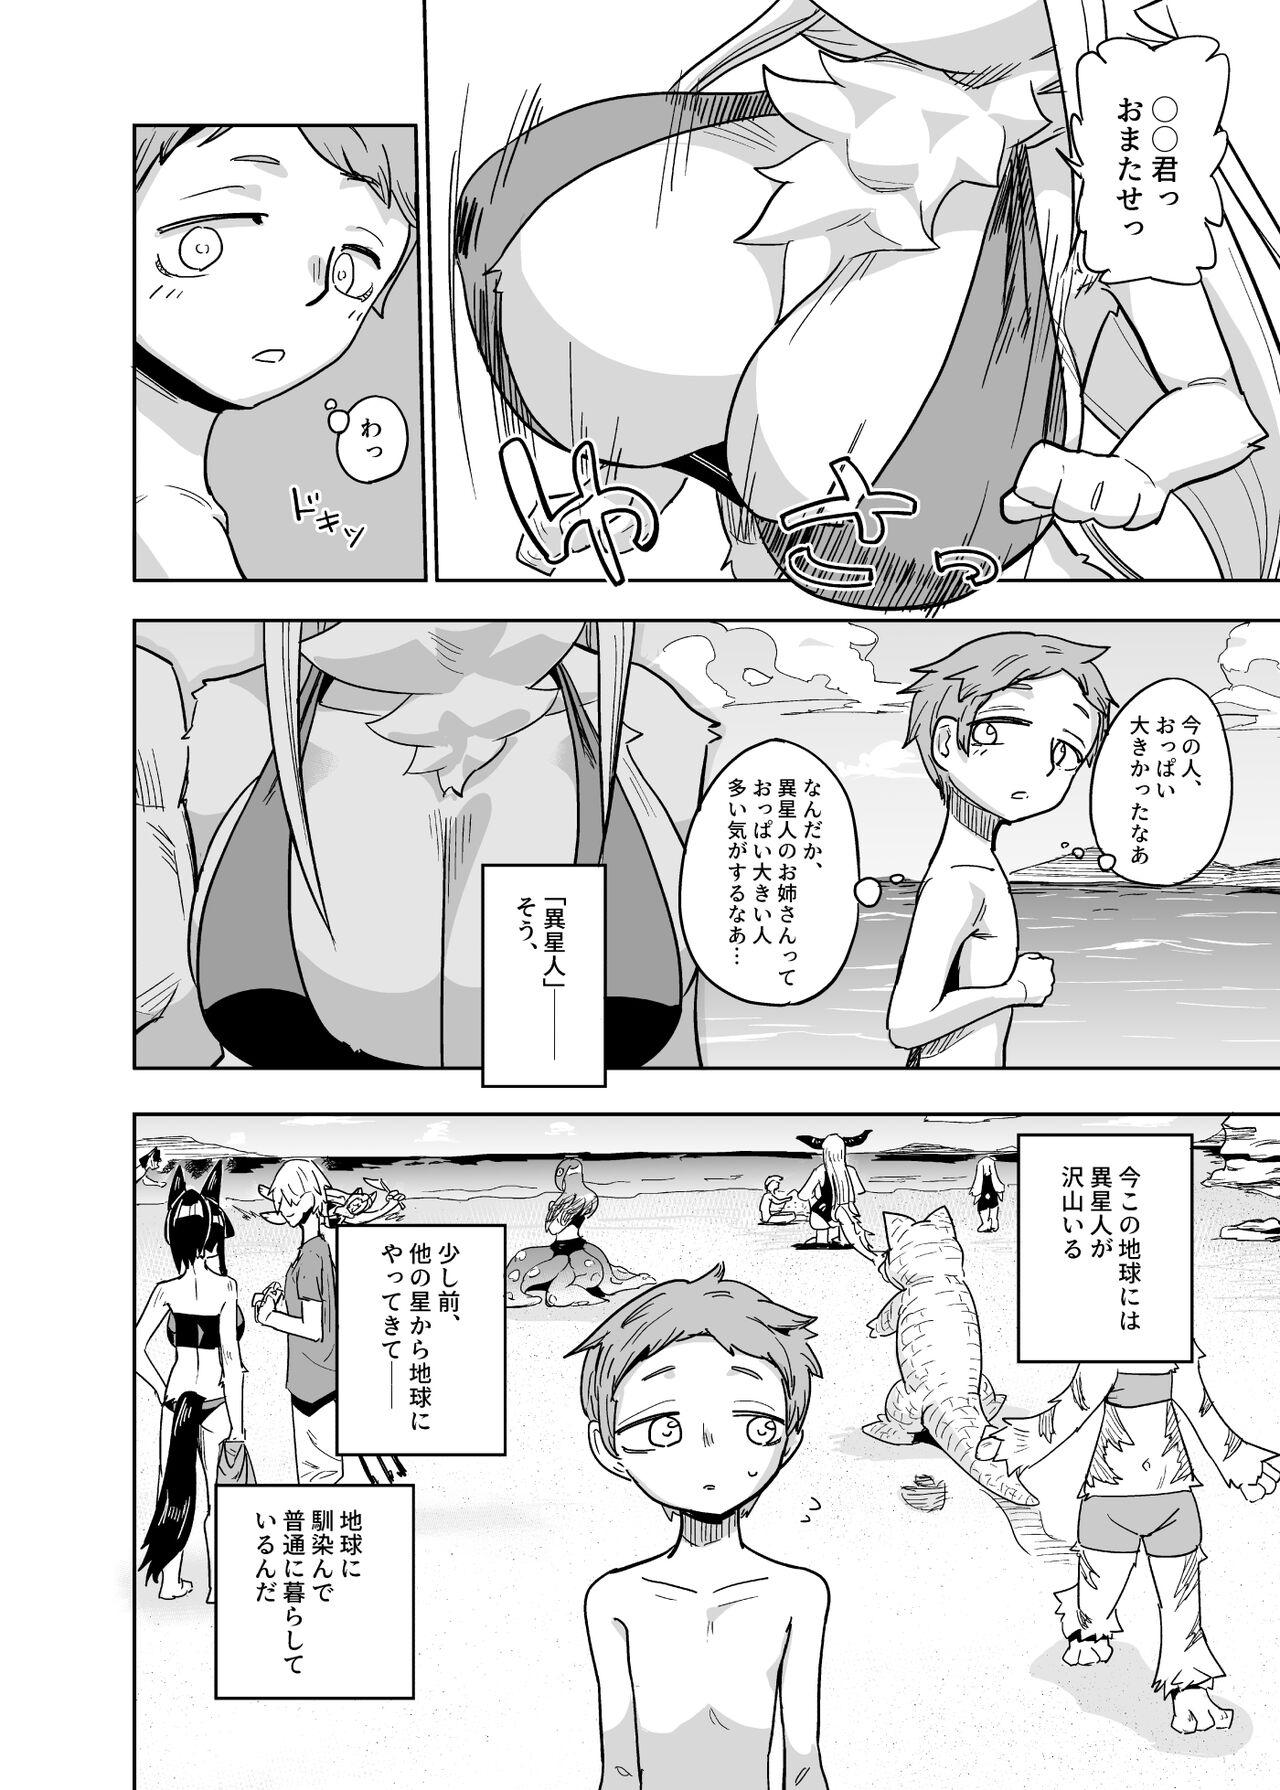 All Natural Iseijin no Hanshoku Nikki 7 - Original Bathroom - Page 2